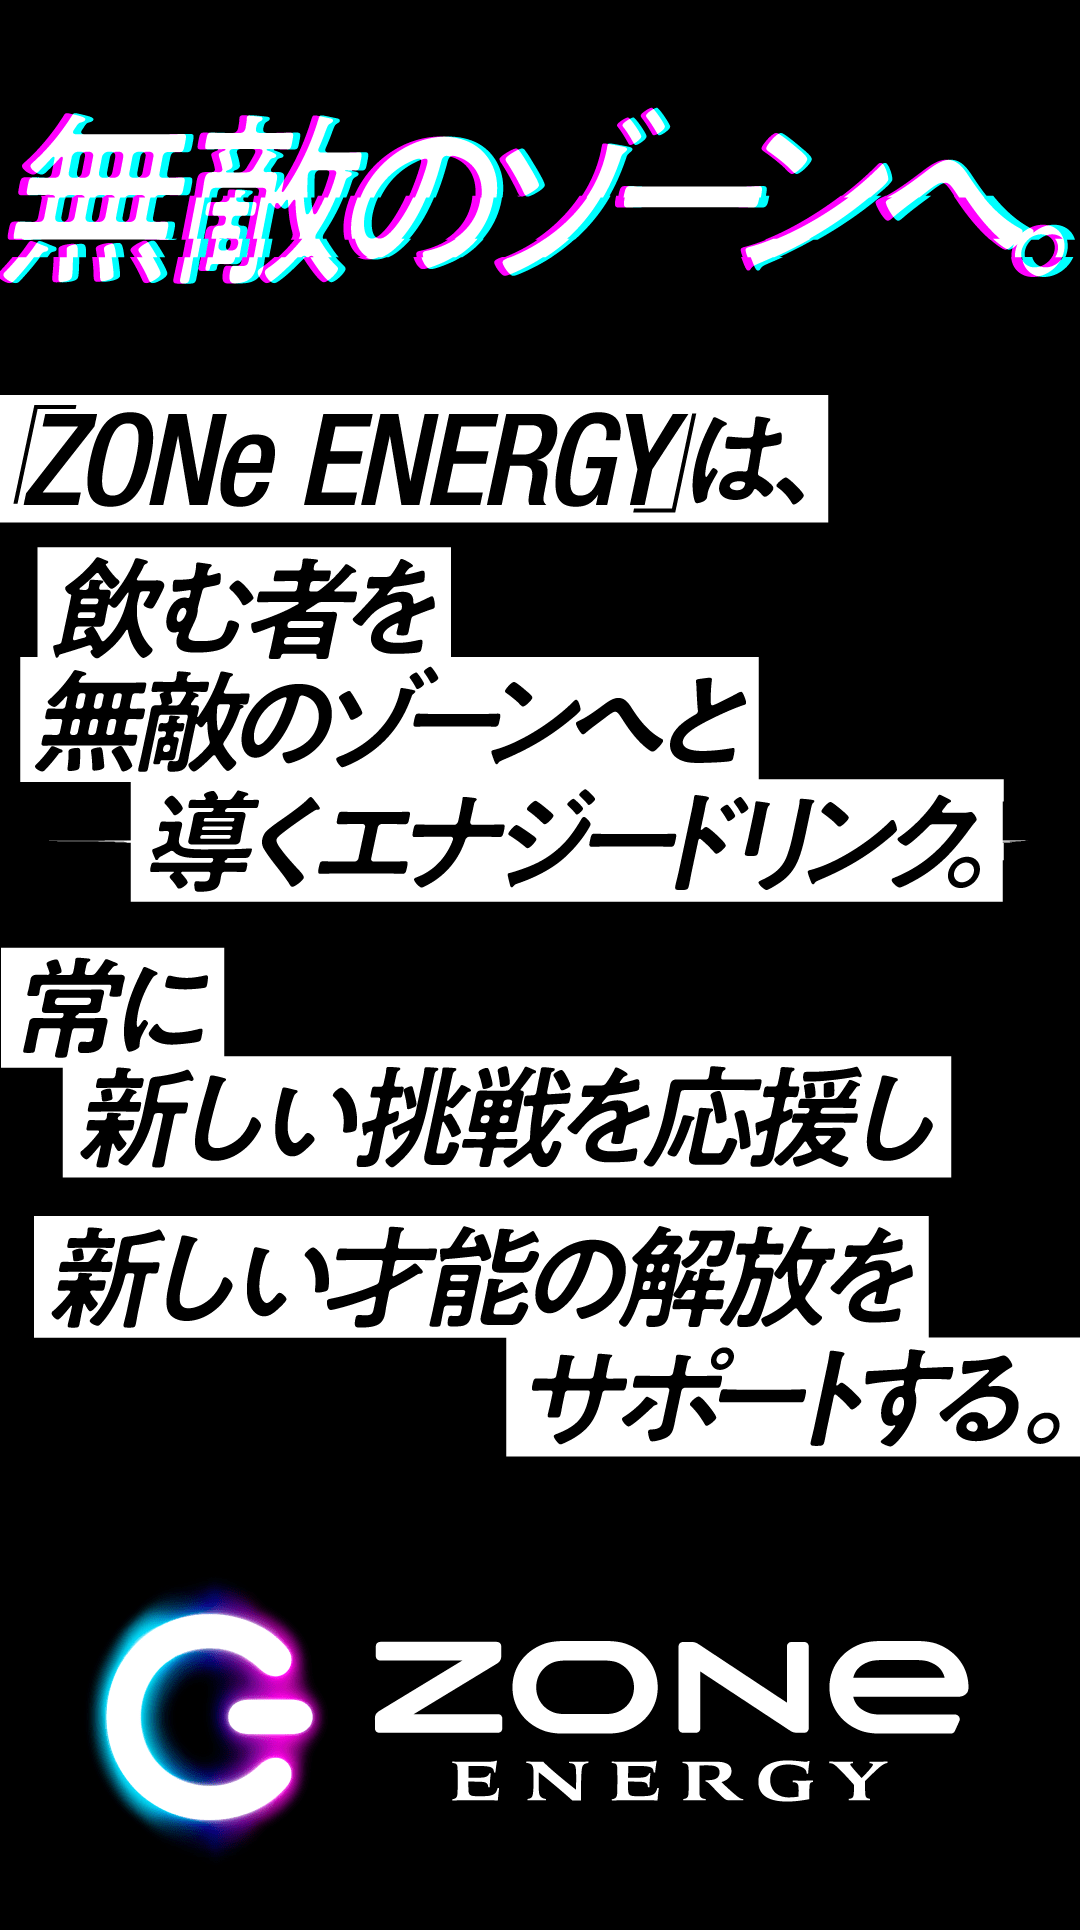 無敵のゾーンへ。ZONe ENERGYは飲む者を無敵のゾーンへと導くエナジードリンク。常に新しい挑戦を応援し新しい才能の解放をサポートする